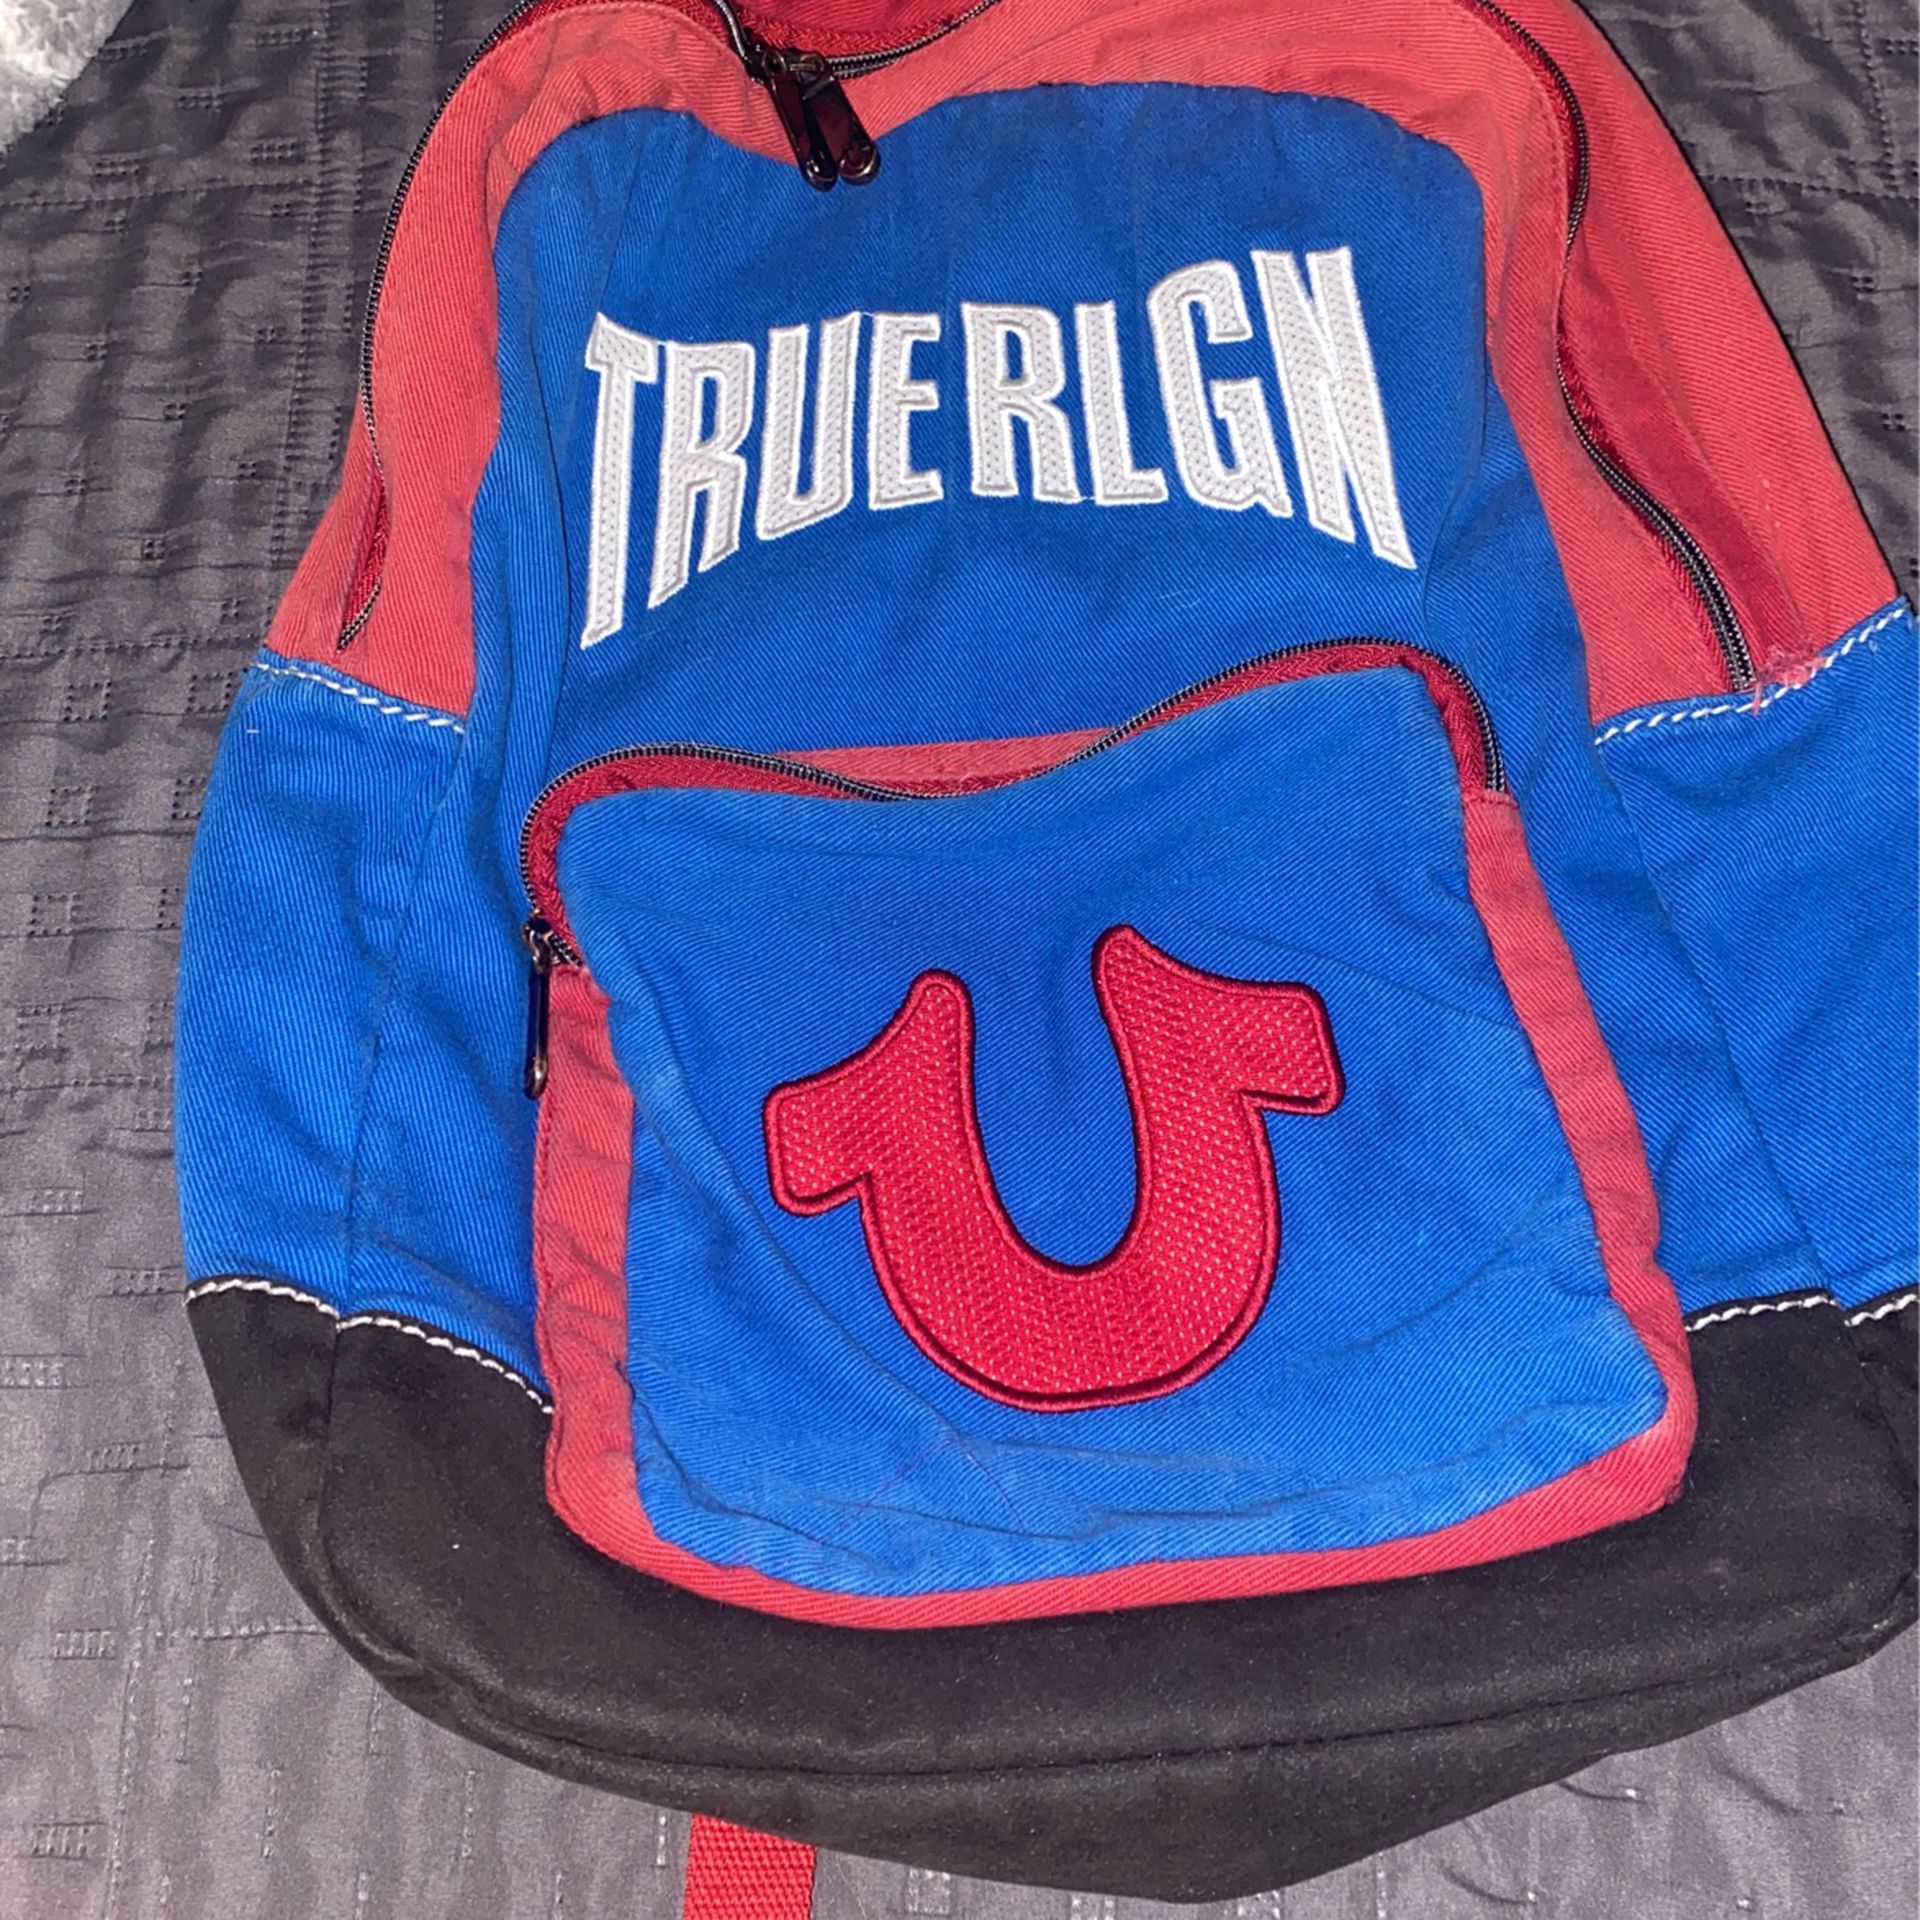 True Religion Backpack